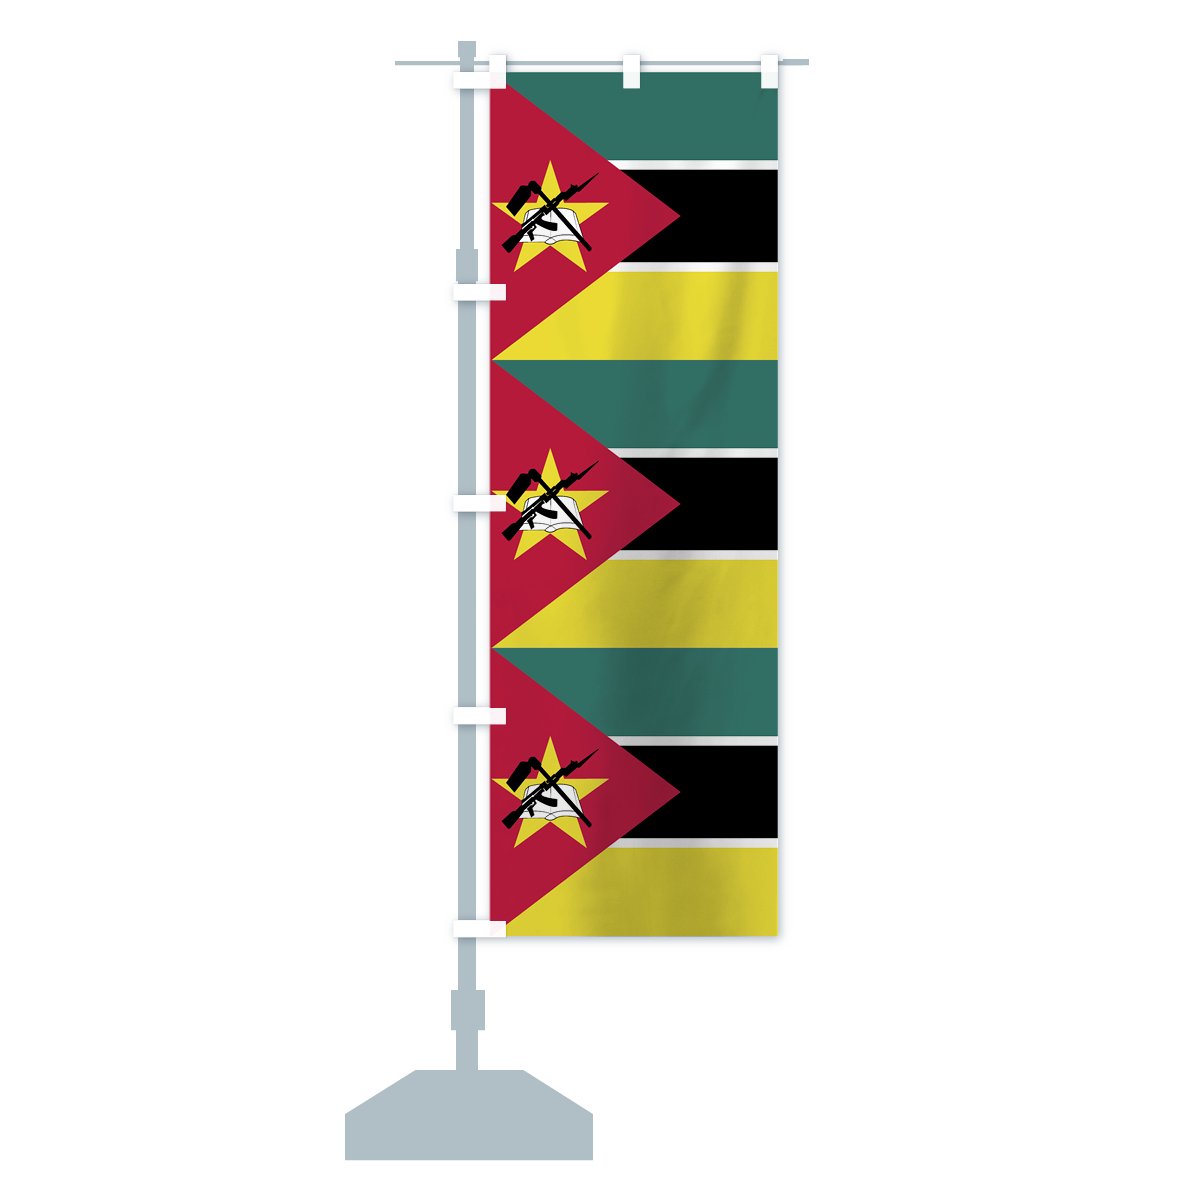 のぼり モザンビーク共和国国旗 のぼり旗 グッズプロ（のぼり源）